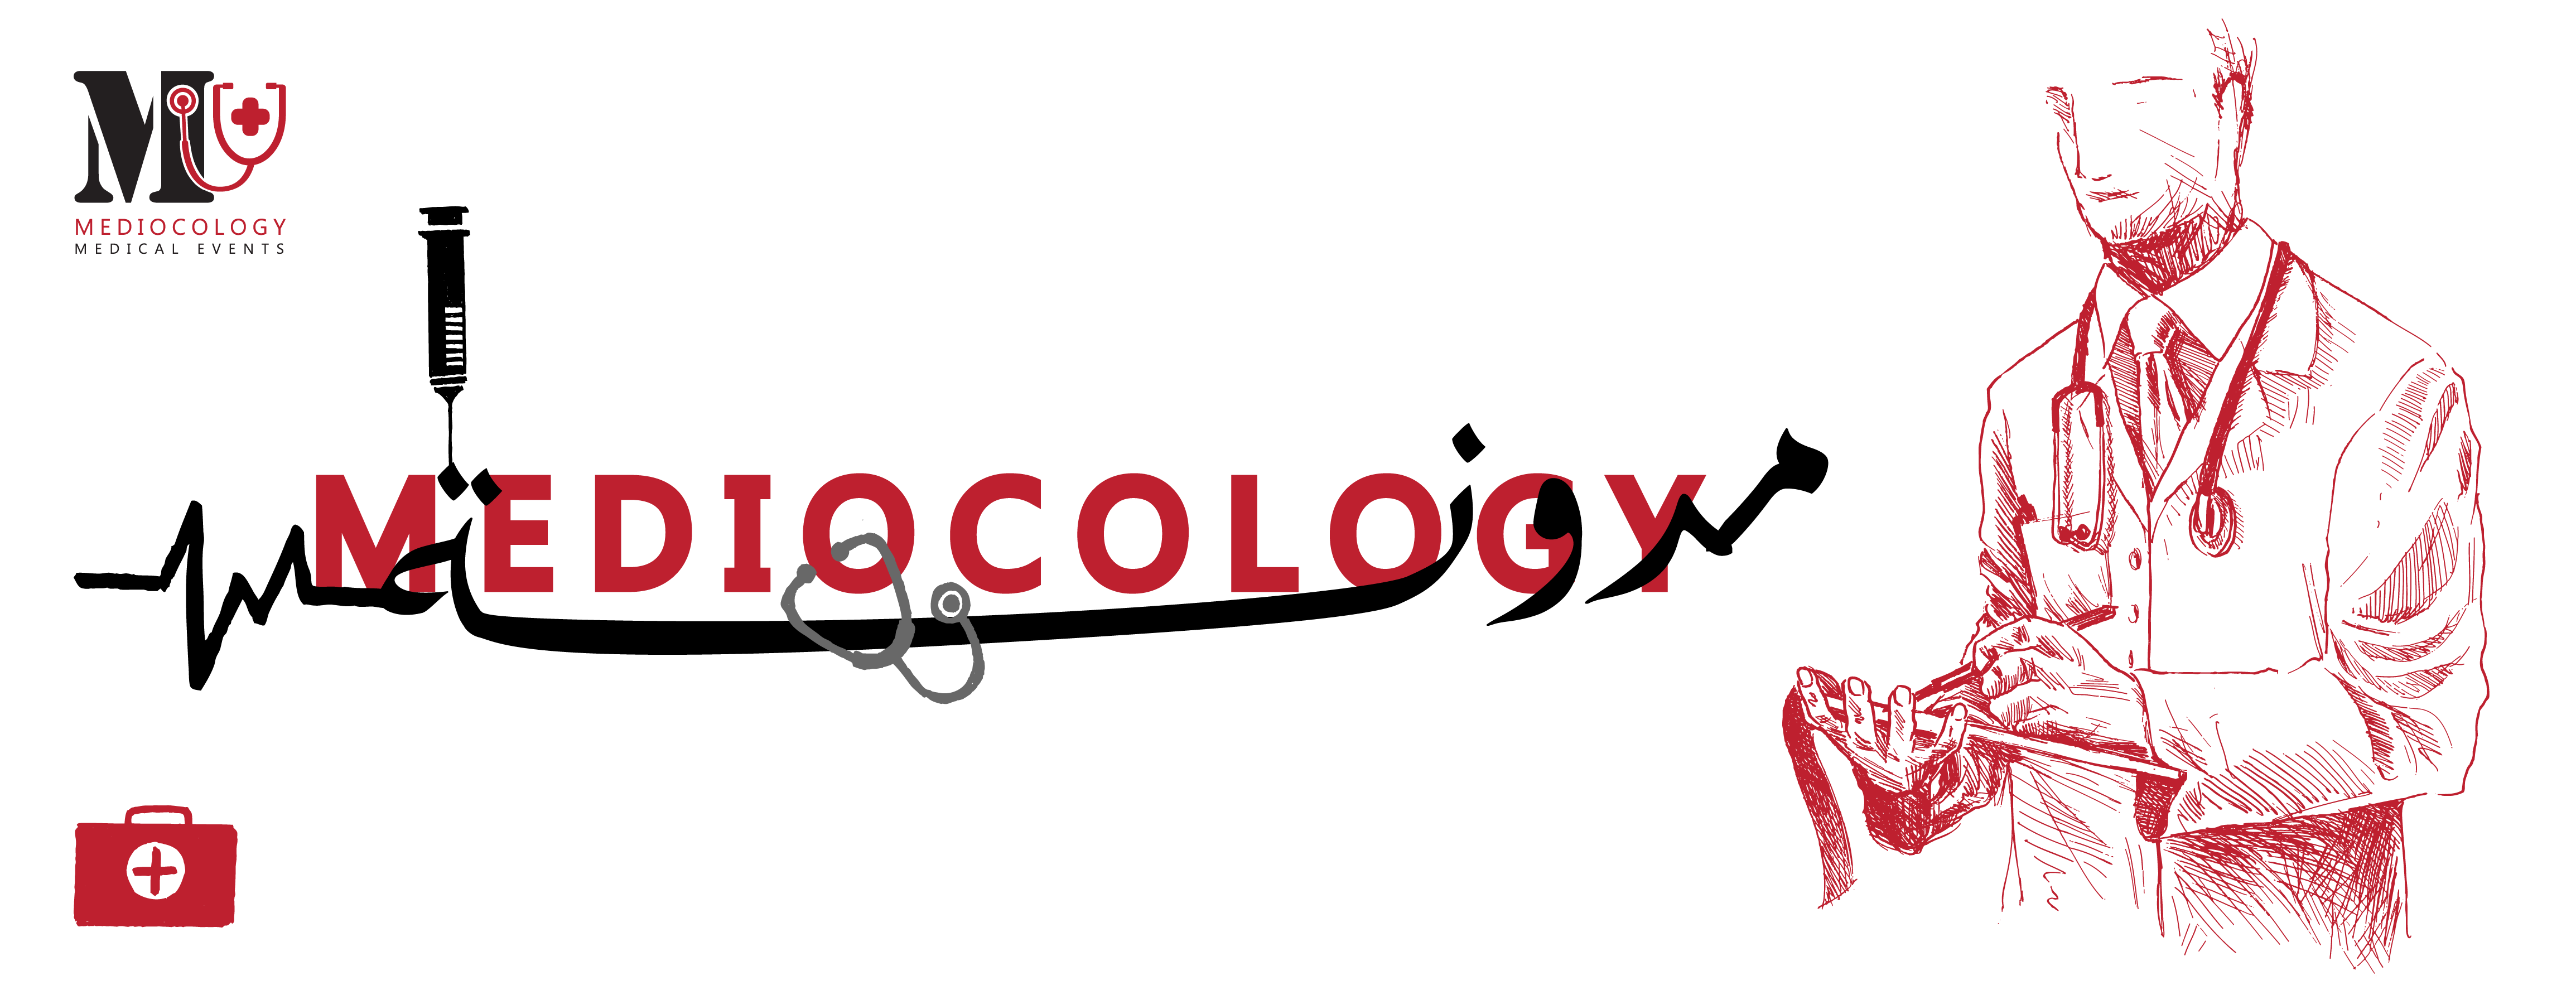 Mediocology image-slider-1